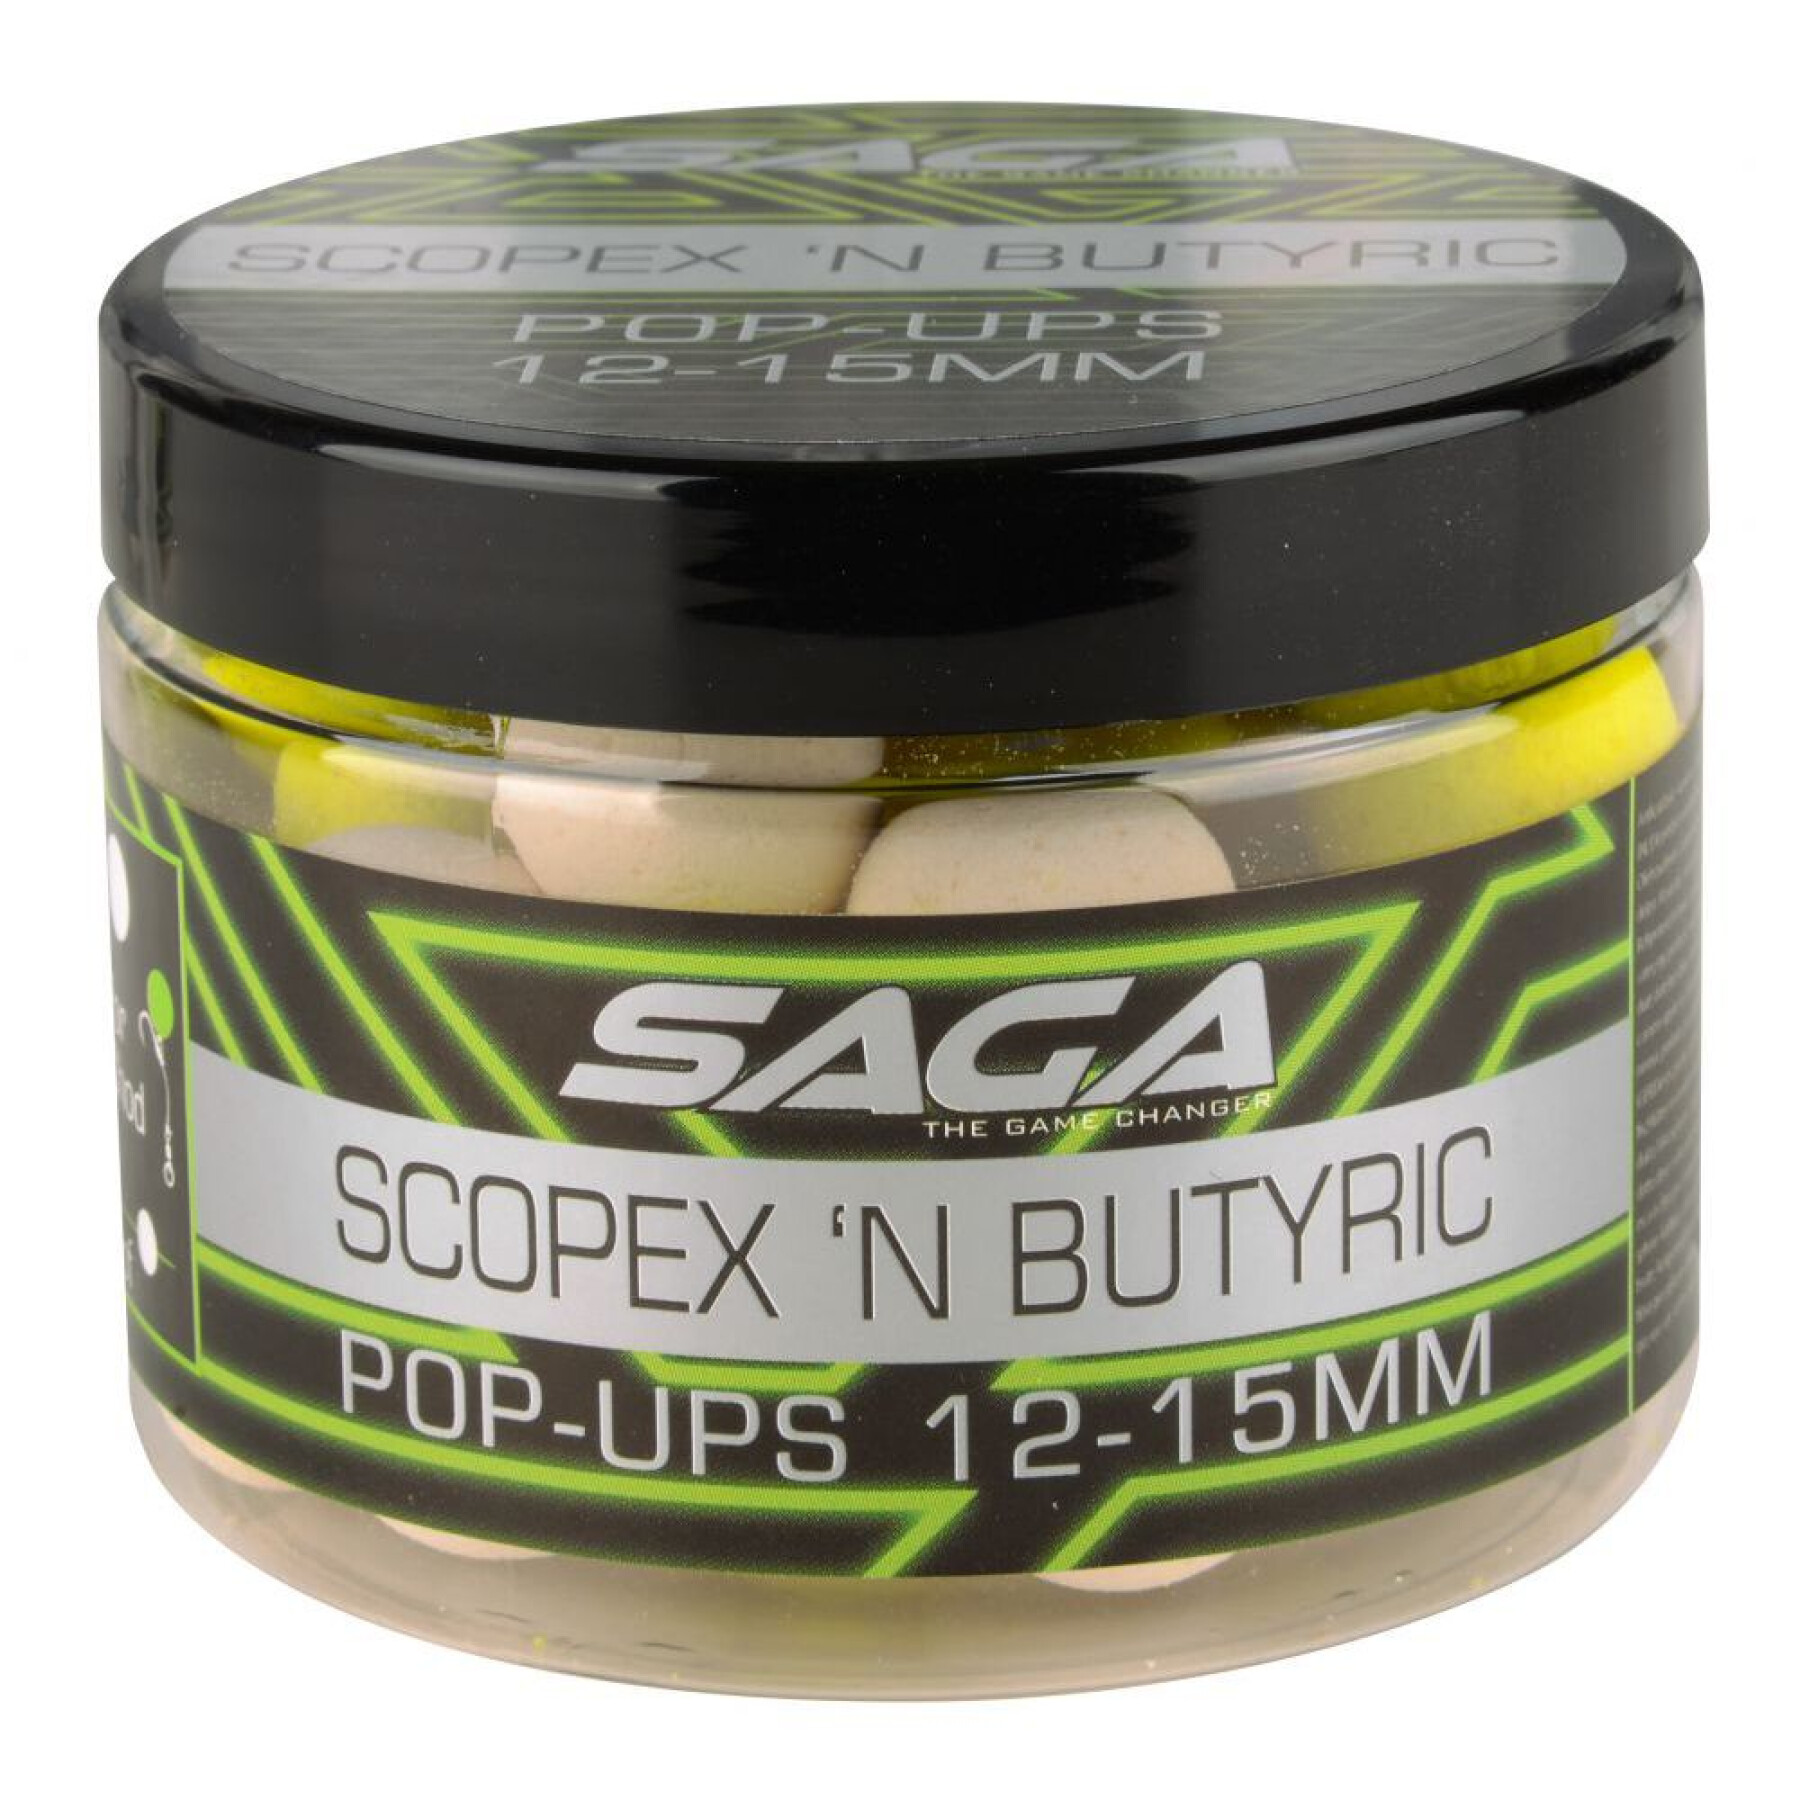 Pop-up Saga Scopex & Butyric 50g